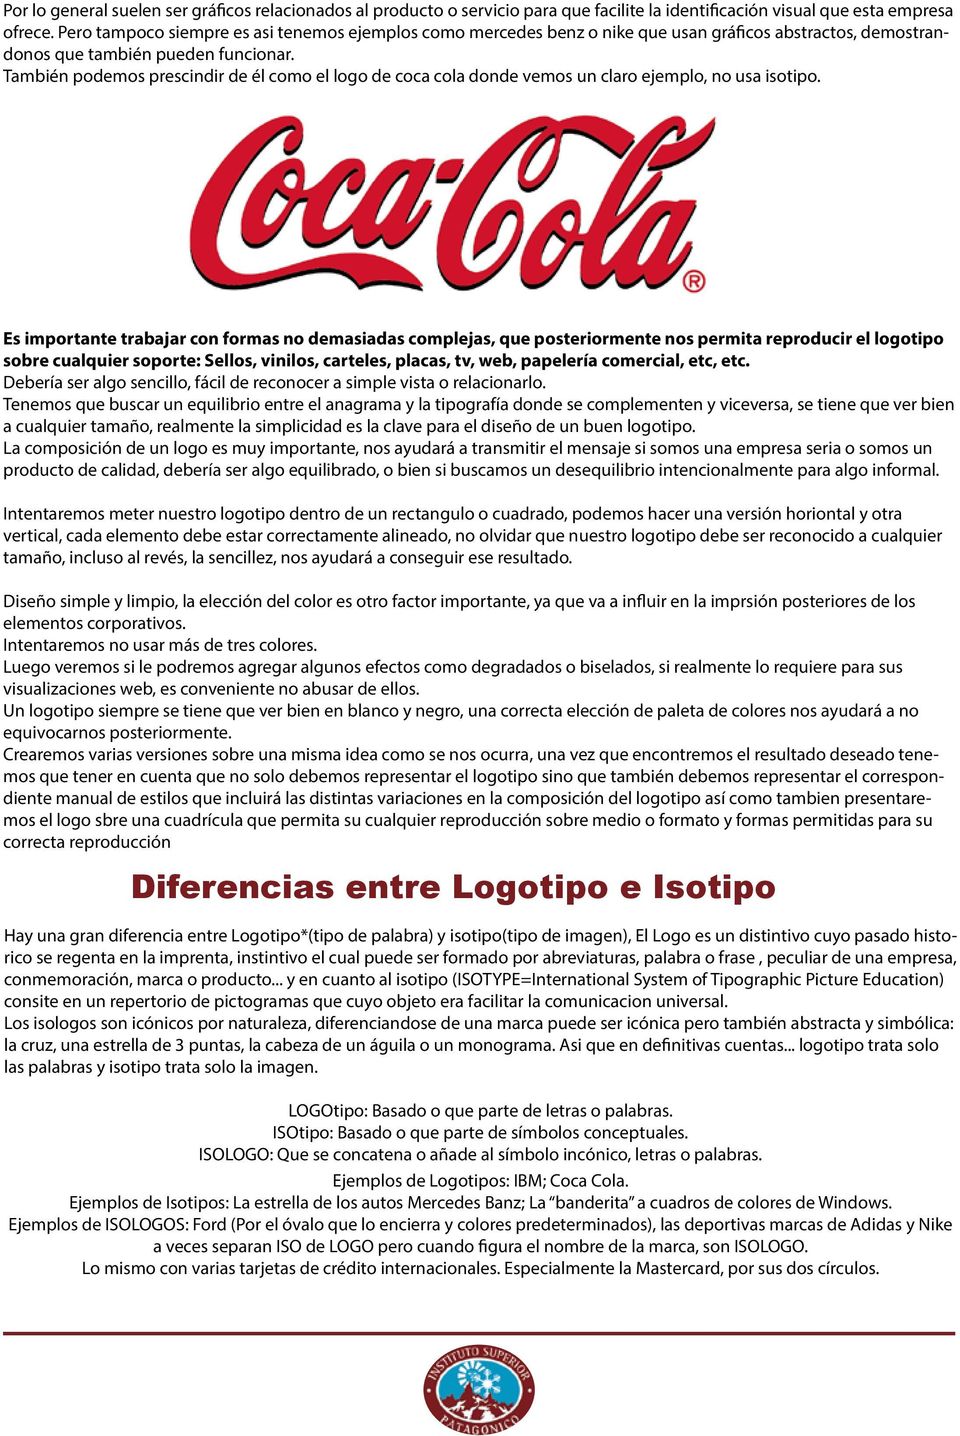 También podemos prescindir de él como el logo de coca cola donde vemos un claro ejemplo, no usa isotipo.